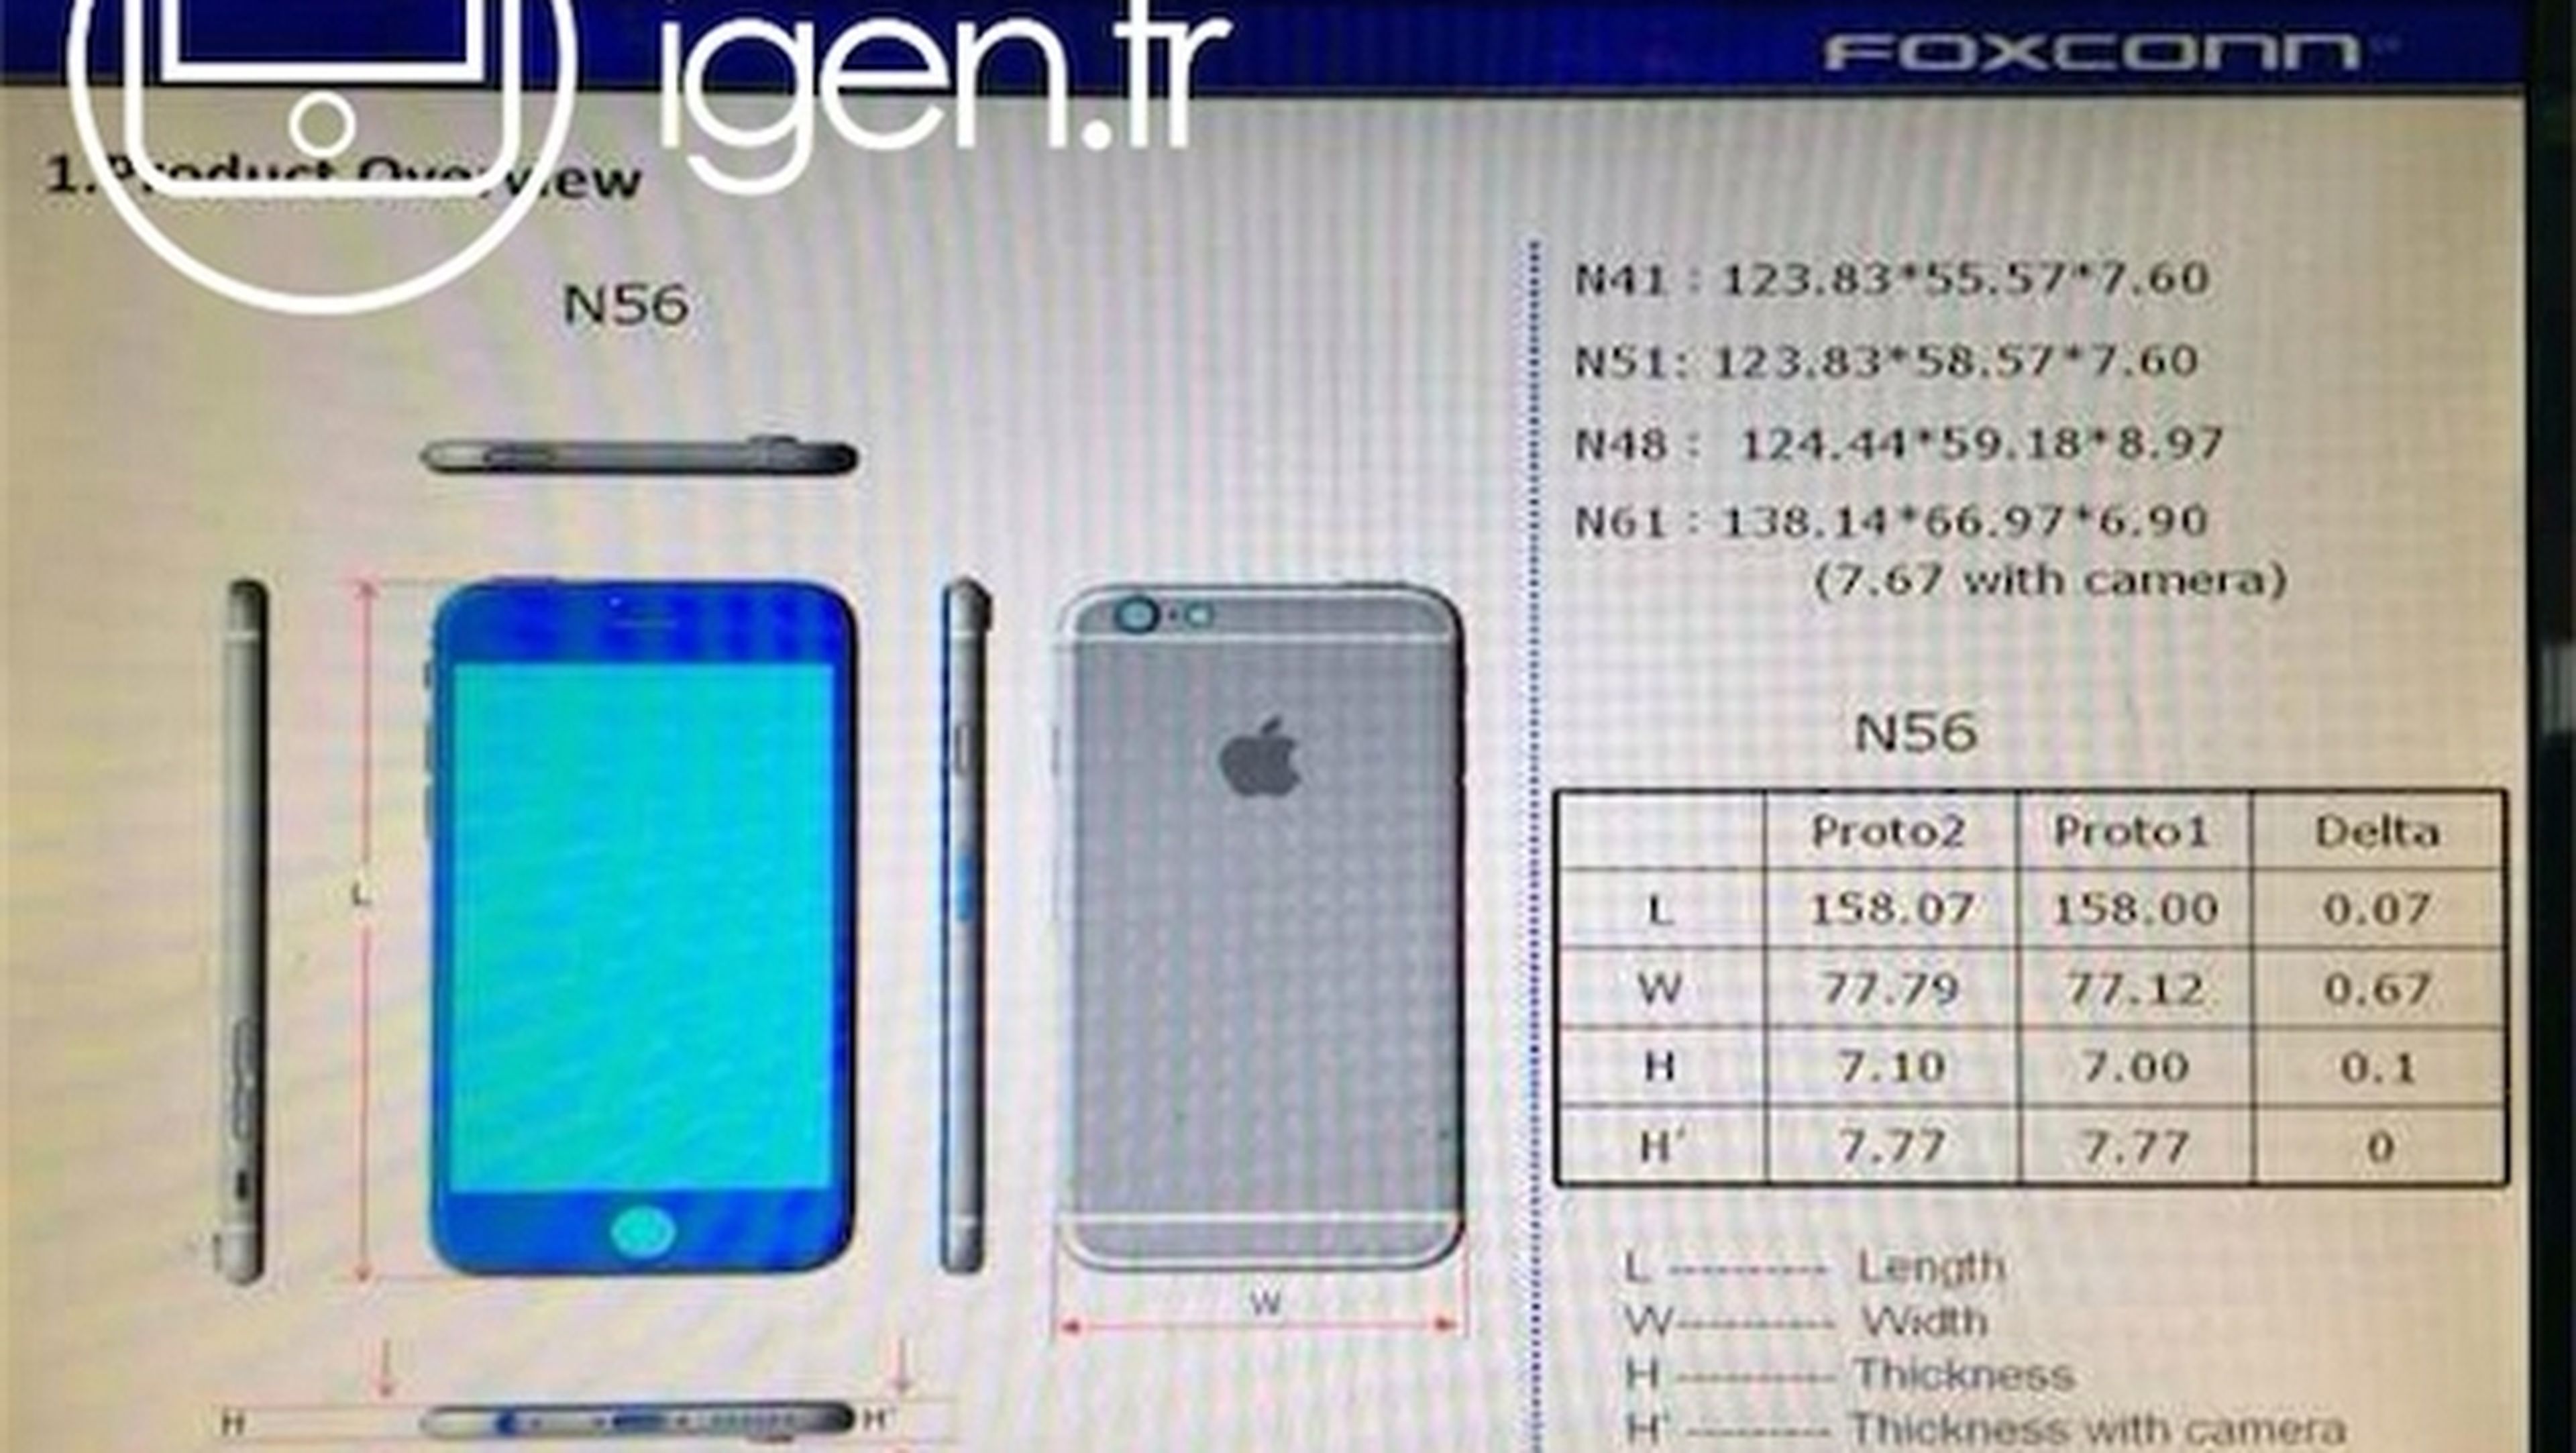 Filtradas las dimensiones y el peso del iPhone 6 de 4.7 y 5.5 pulgadas, según Foxconn.